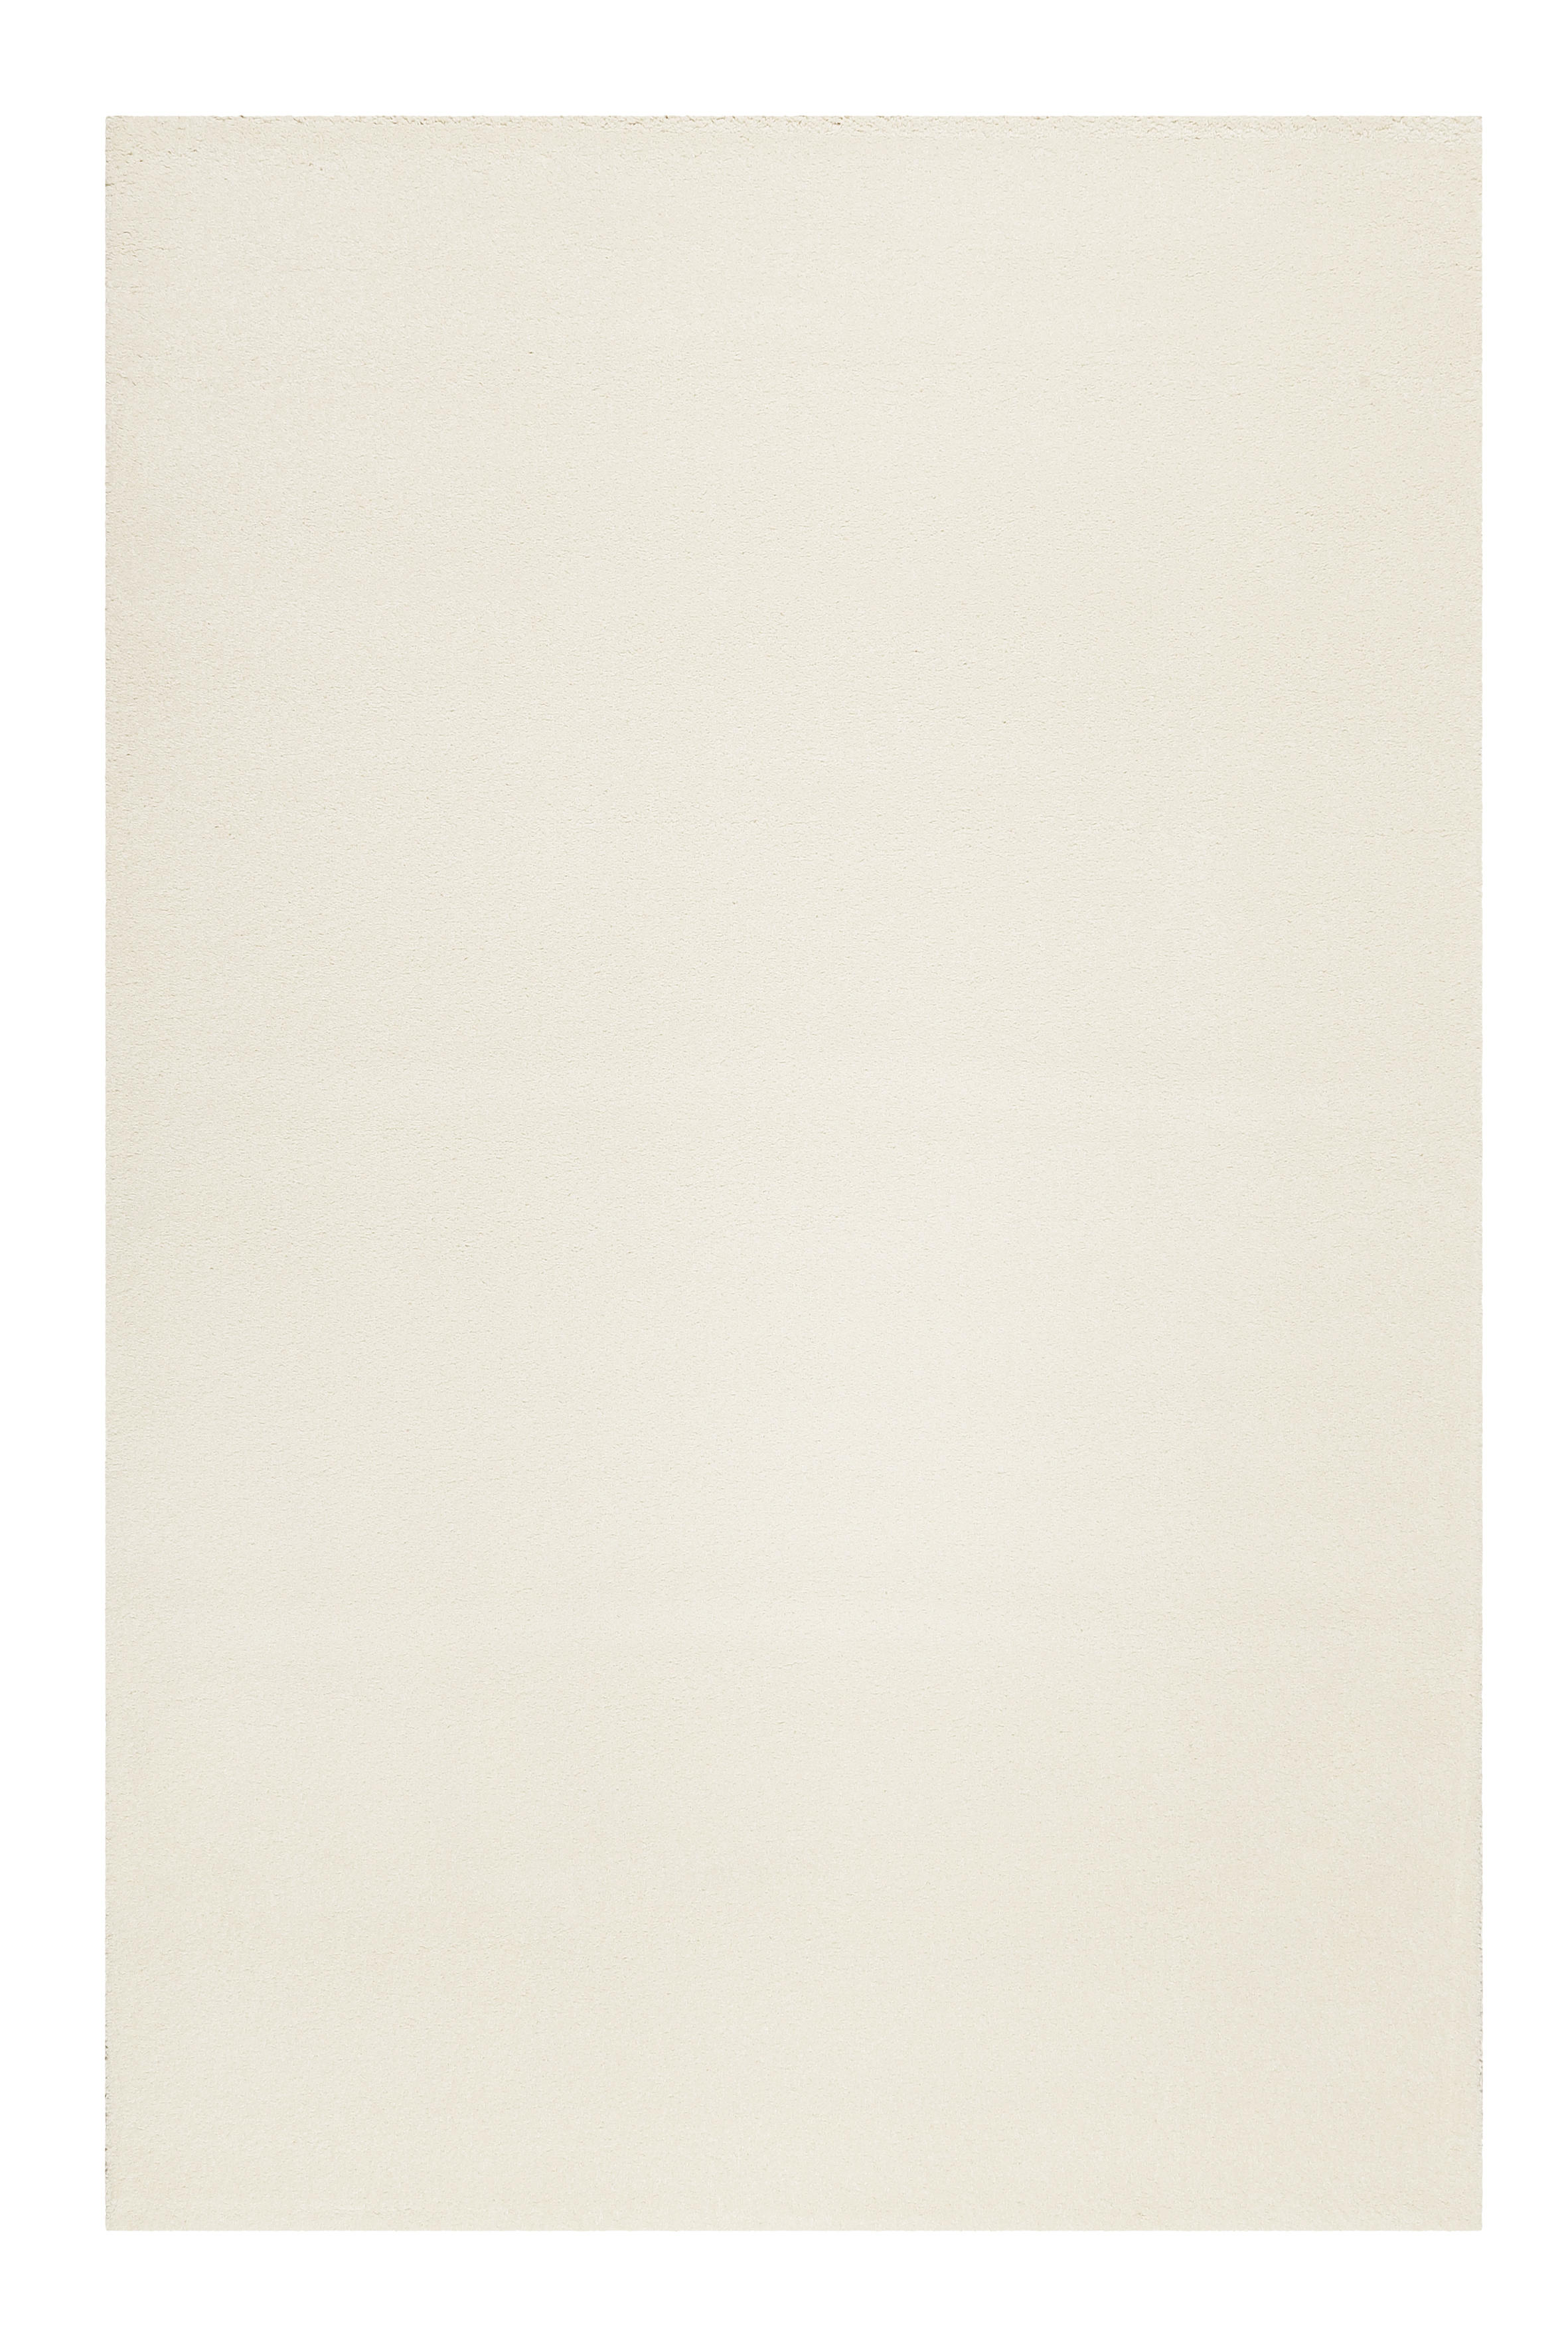 WEBTEPPICH  80/150 cm  Creme, Weiß   - Creme/Weiß, KONVENTIONELL, Textil (80/150cm) - Esprit